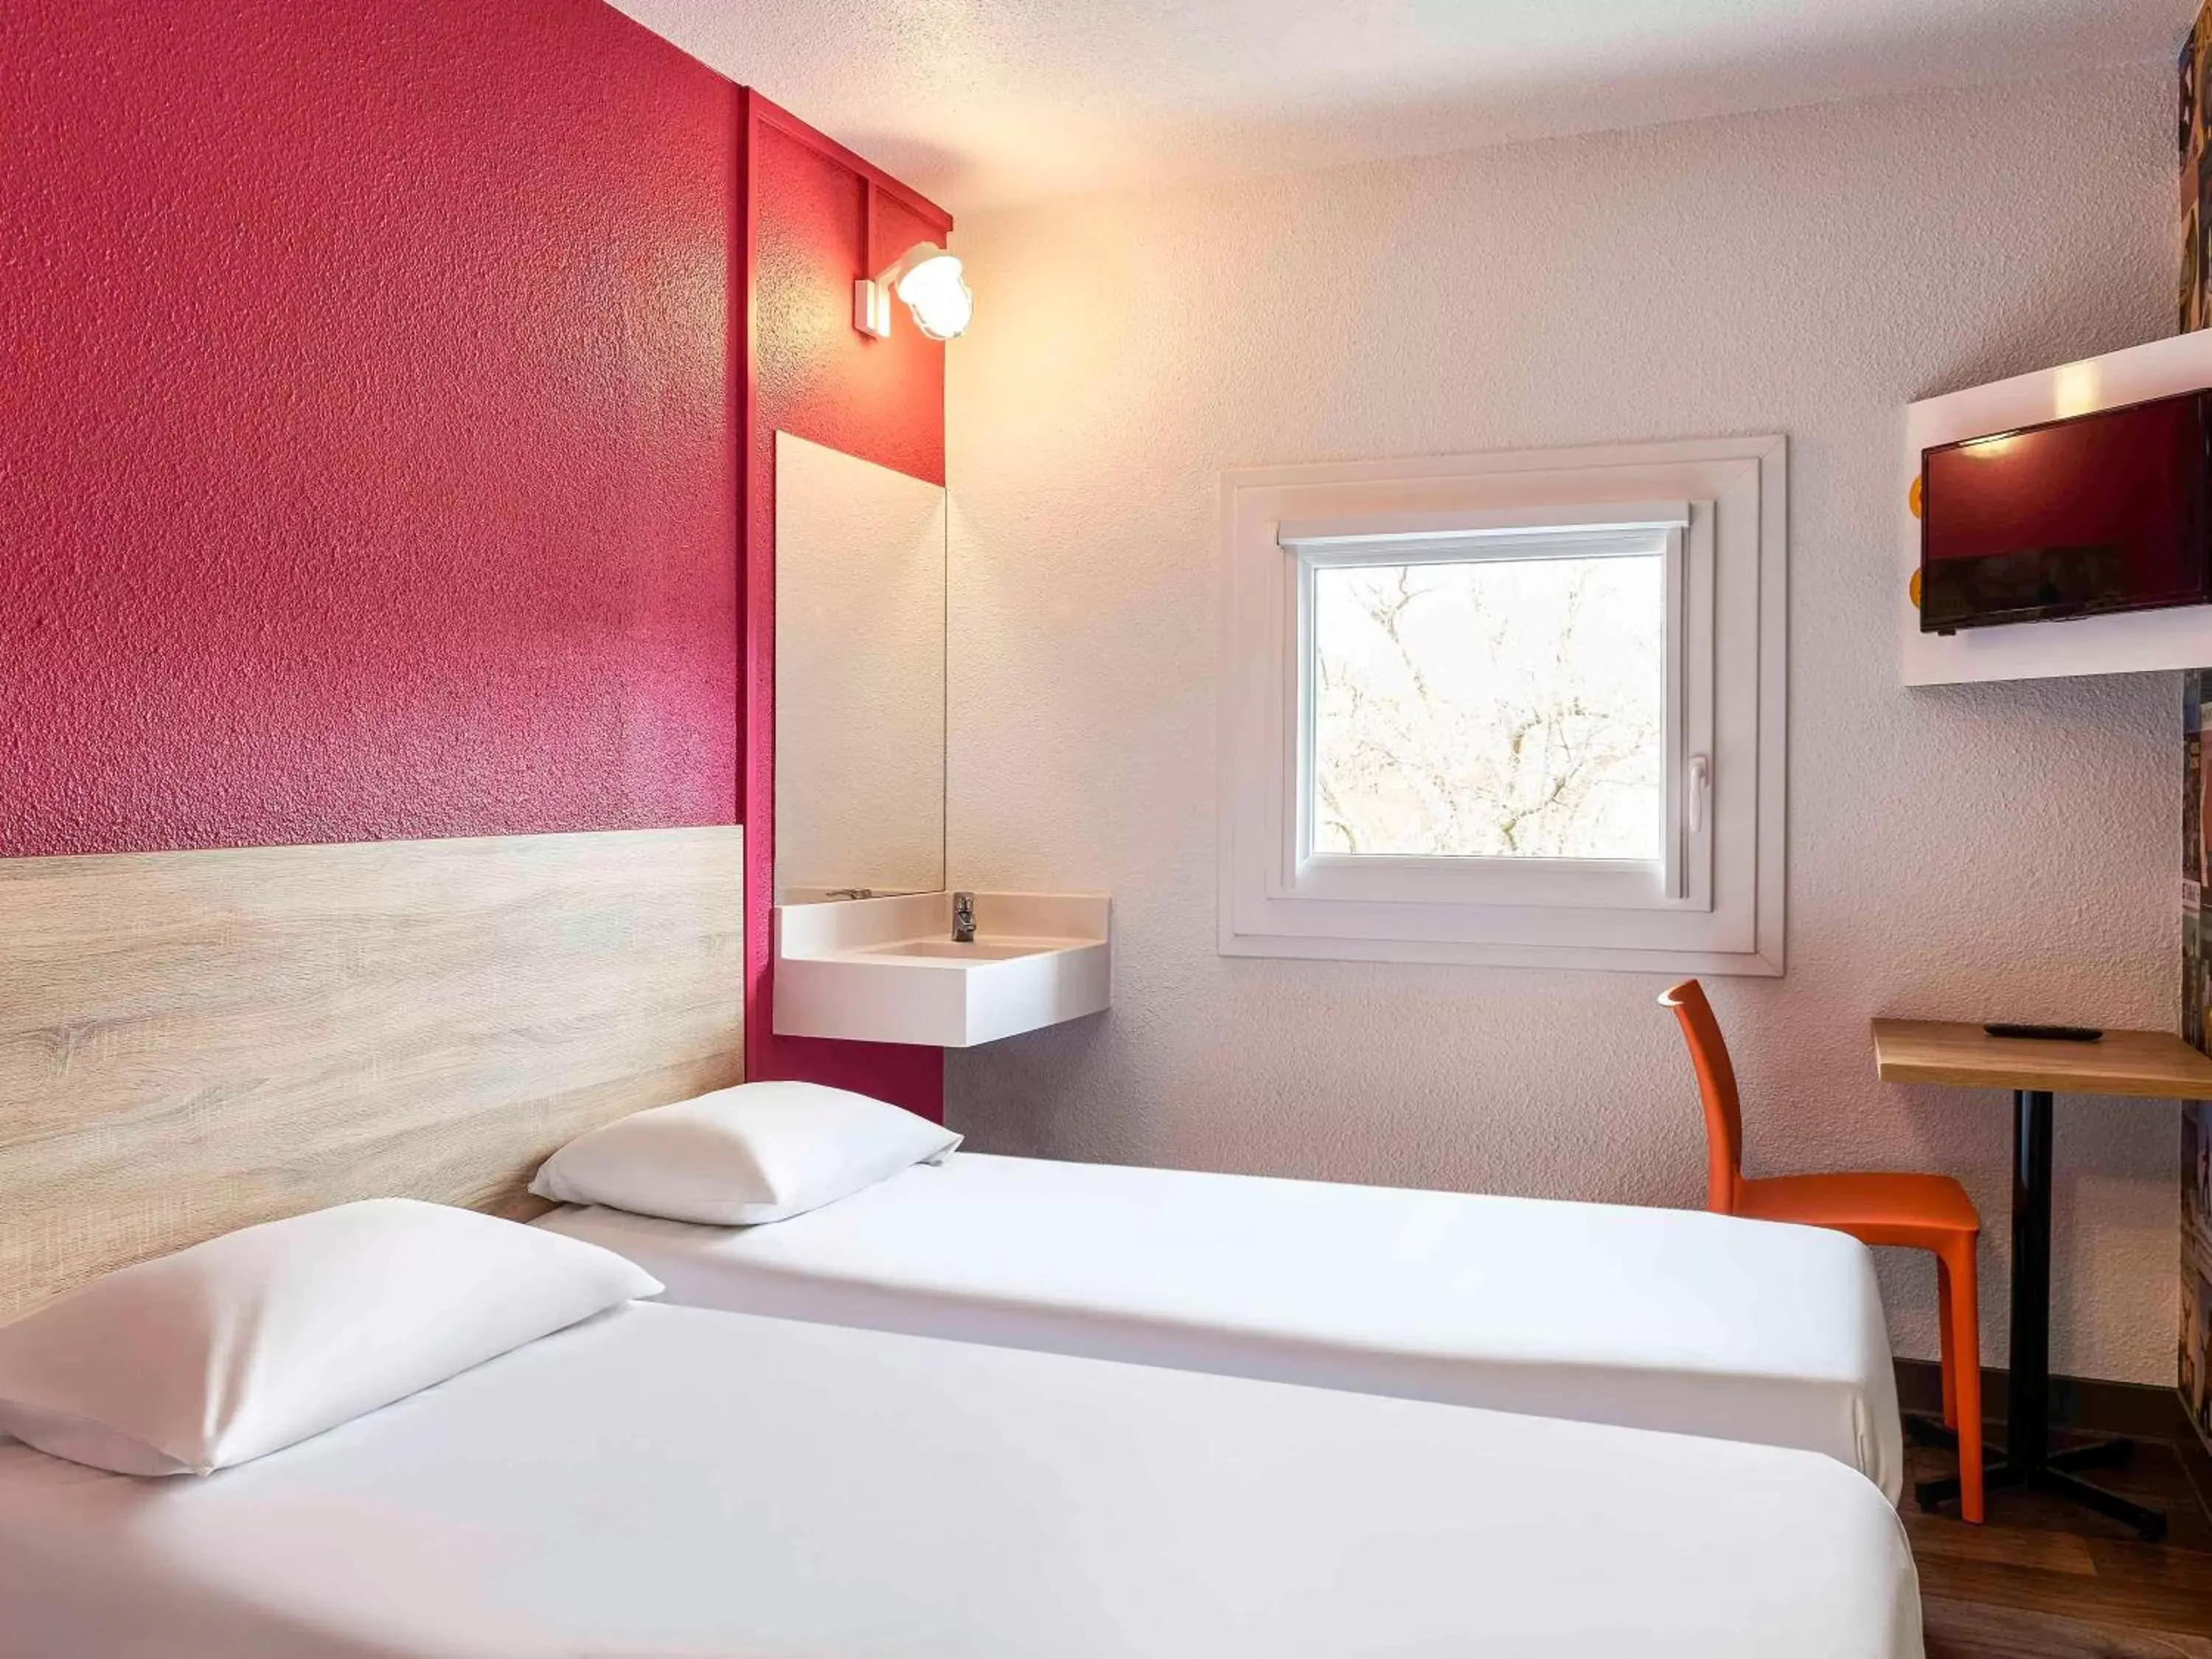 Bathroom, Bed in hotelF1 Paris Porte de Châtillon